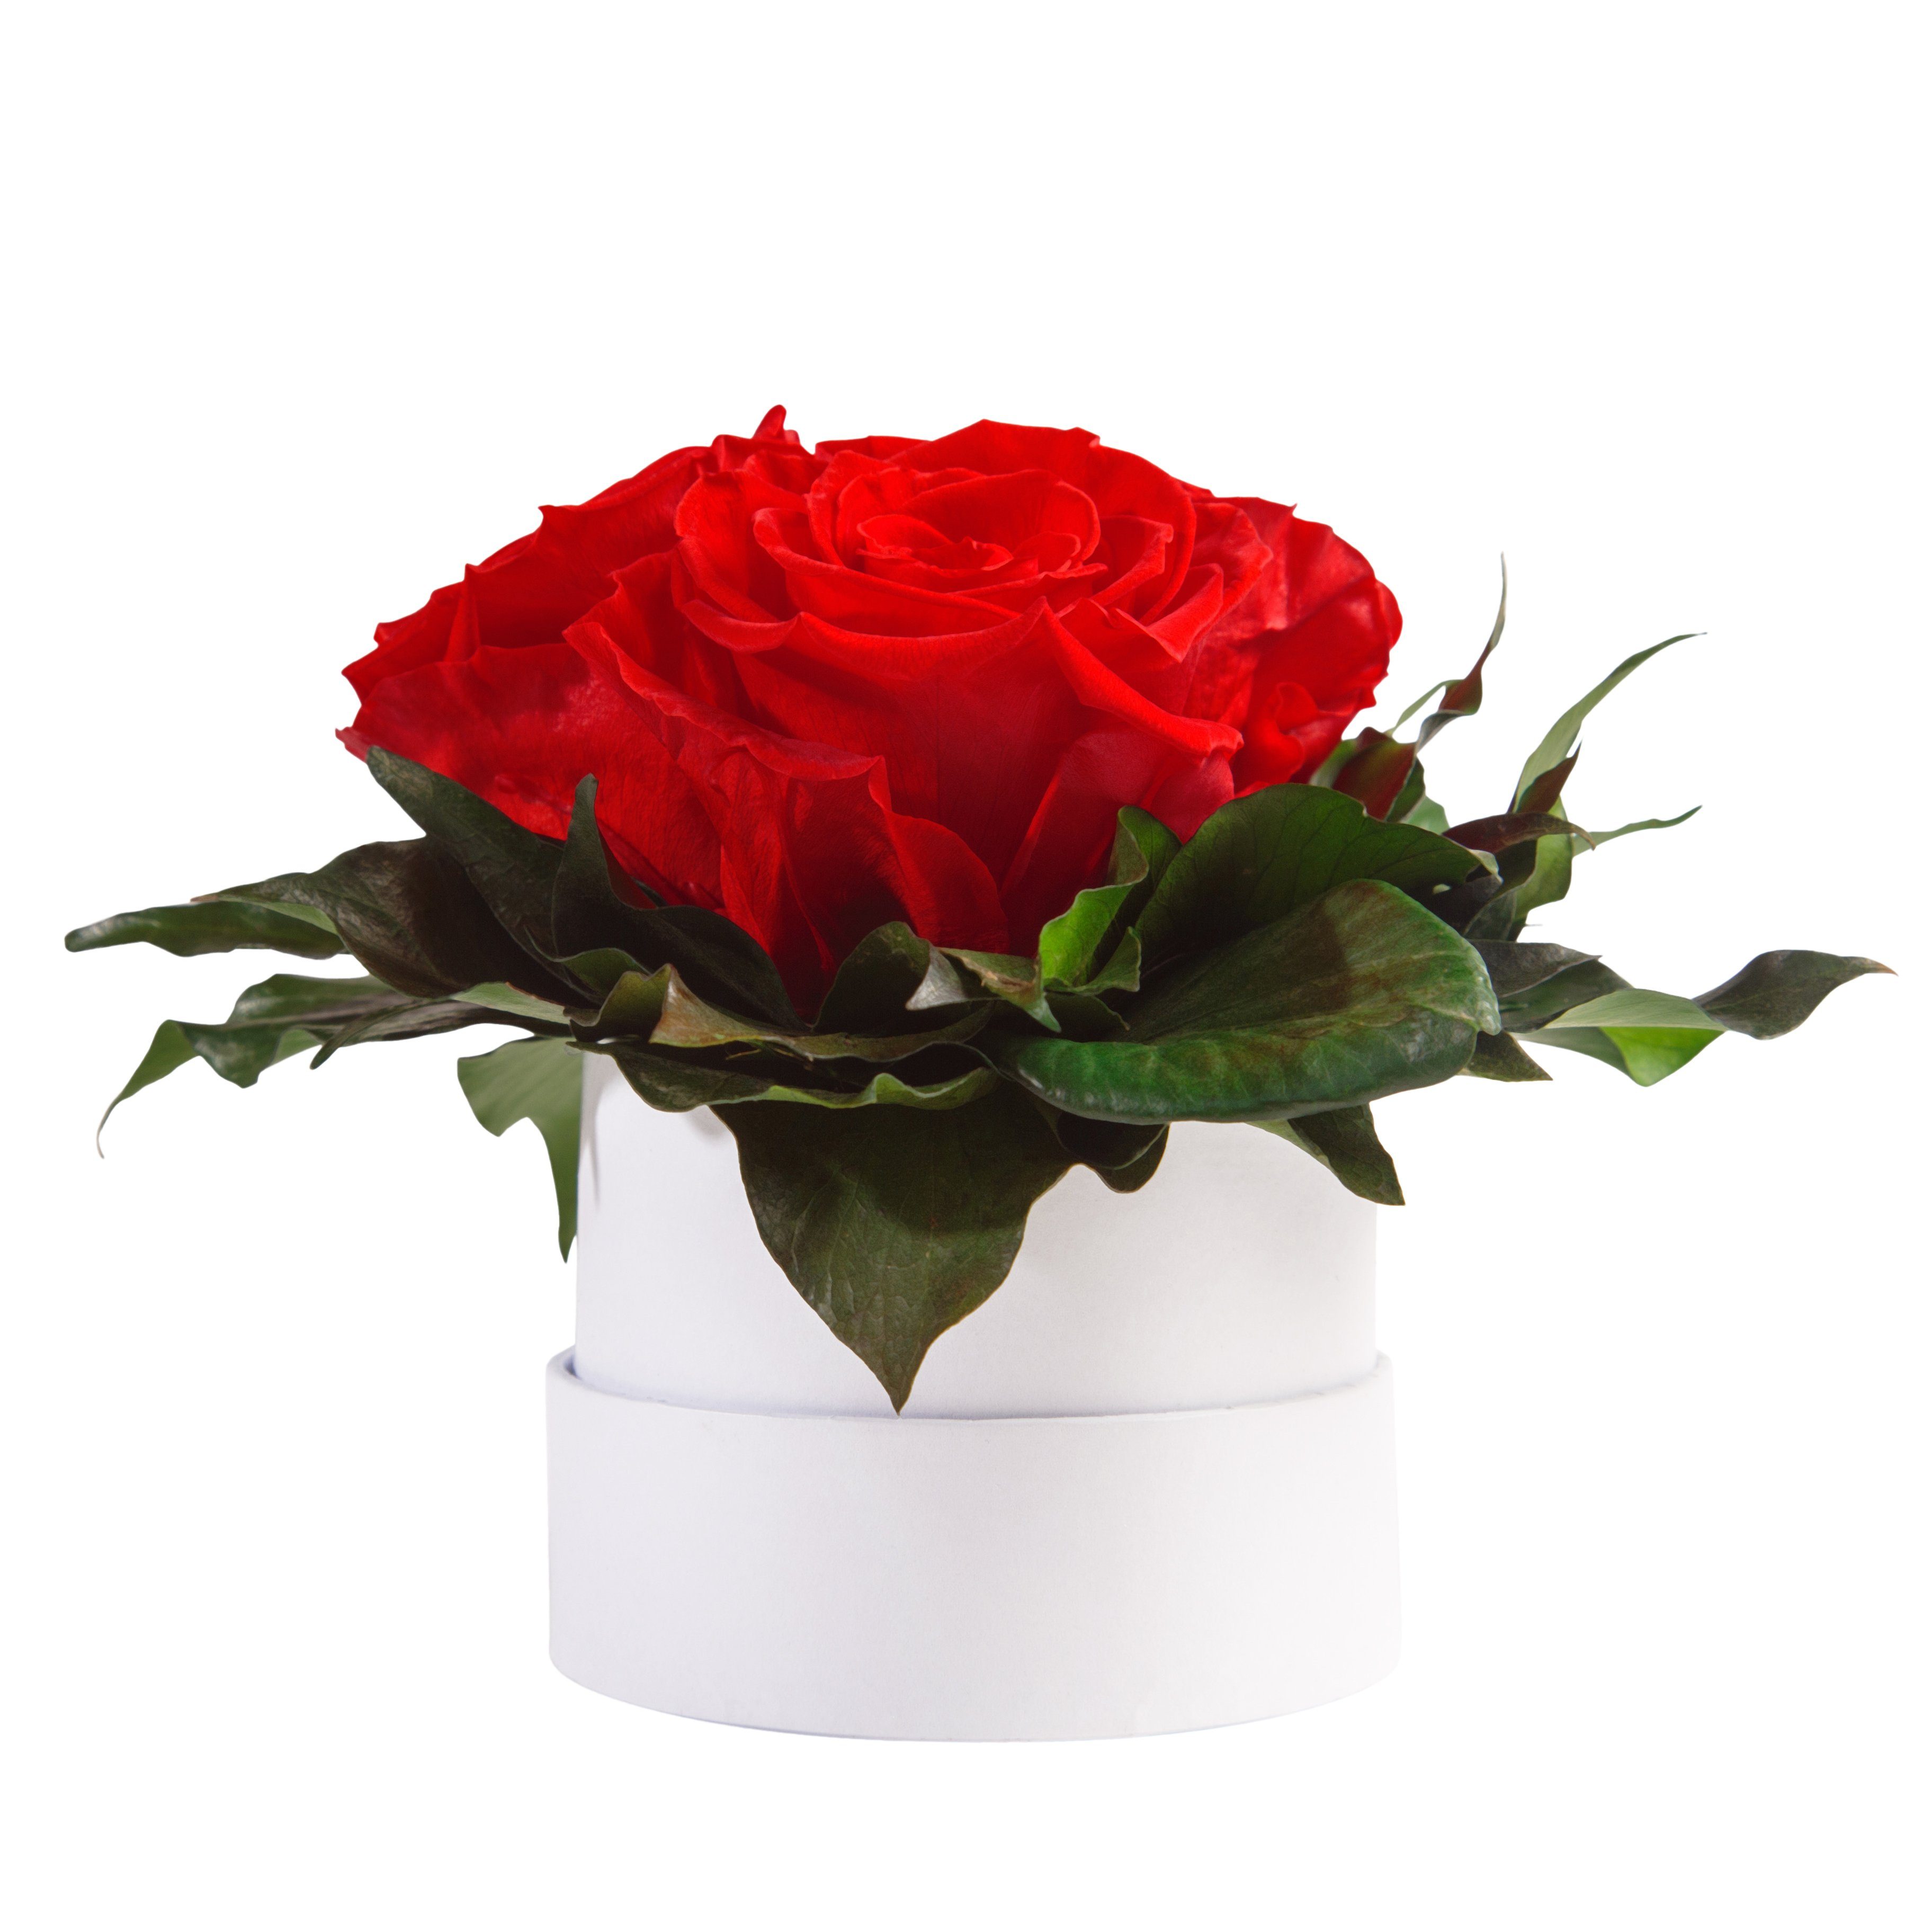 Kunstblume Infinity Rosenbox weiß rund 3 echte Rosen konserviert Rose, ROSEMARIE SCHULZ Heidelberg, Höhe 10 cm, Geschenk für Sie Rosen Rot